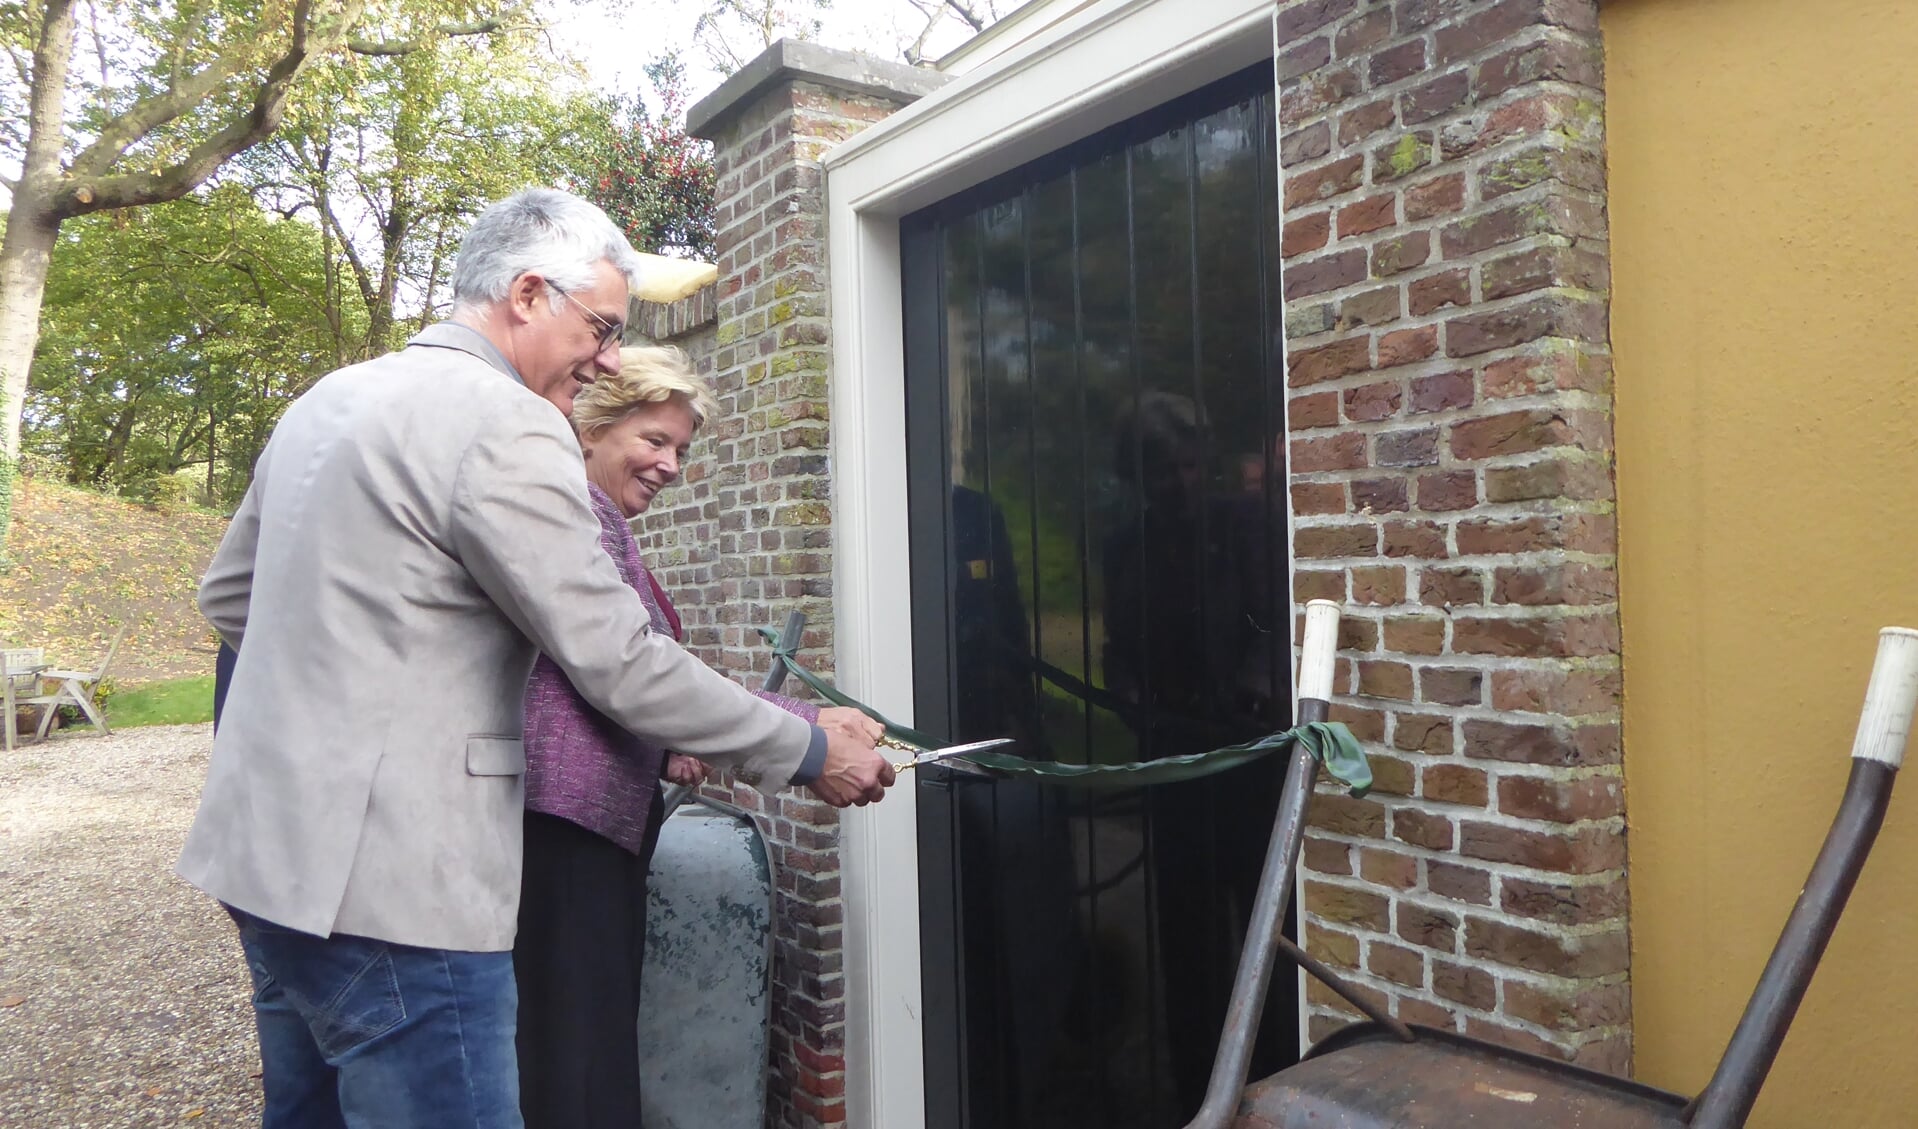 Wethouder van den Berg en mevrouw De Zoete verrichten de opening bij de tuinpoort. | Foto: Ina Verblaauw